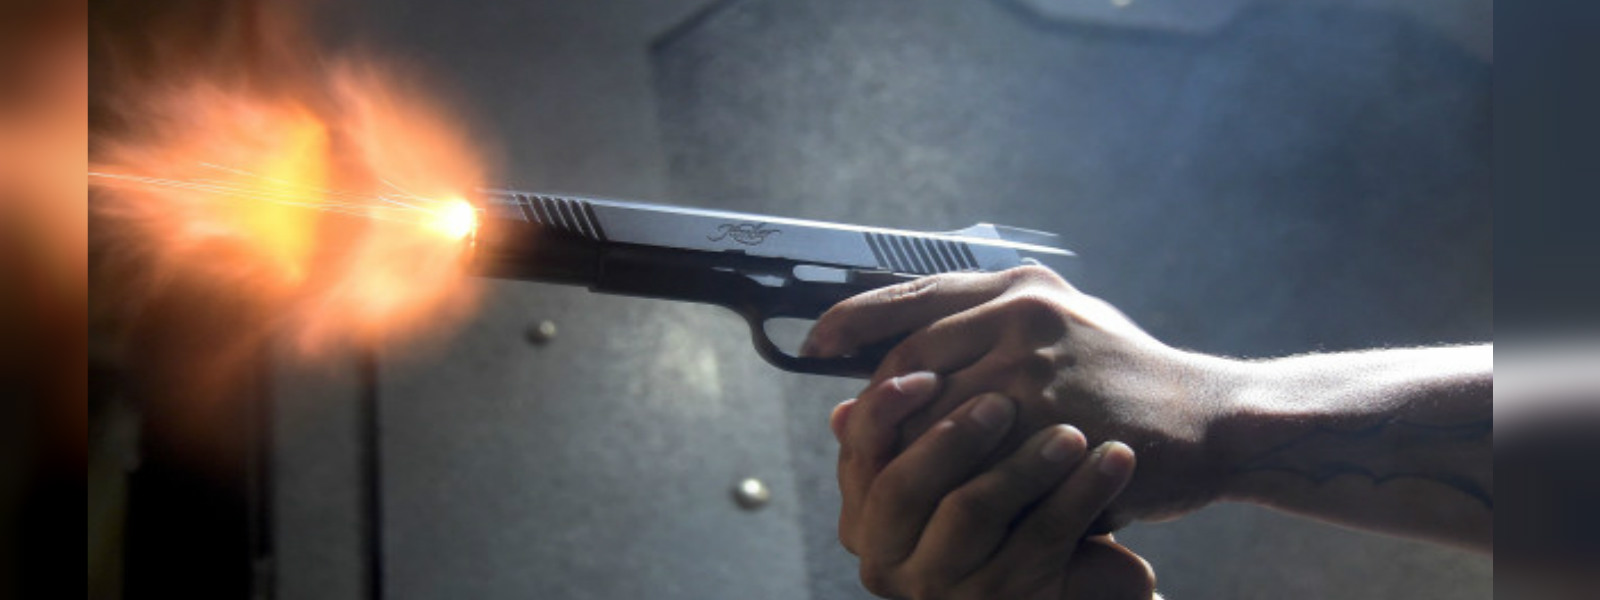 23-year-old dies in shooting at Hanwella